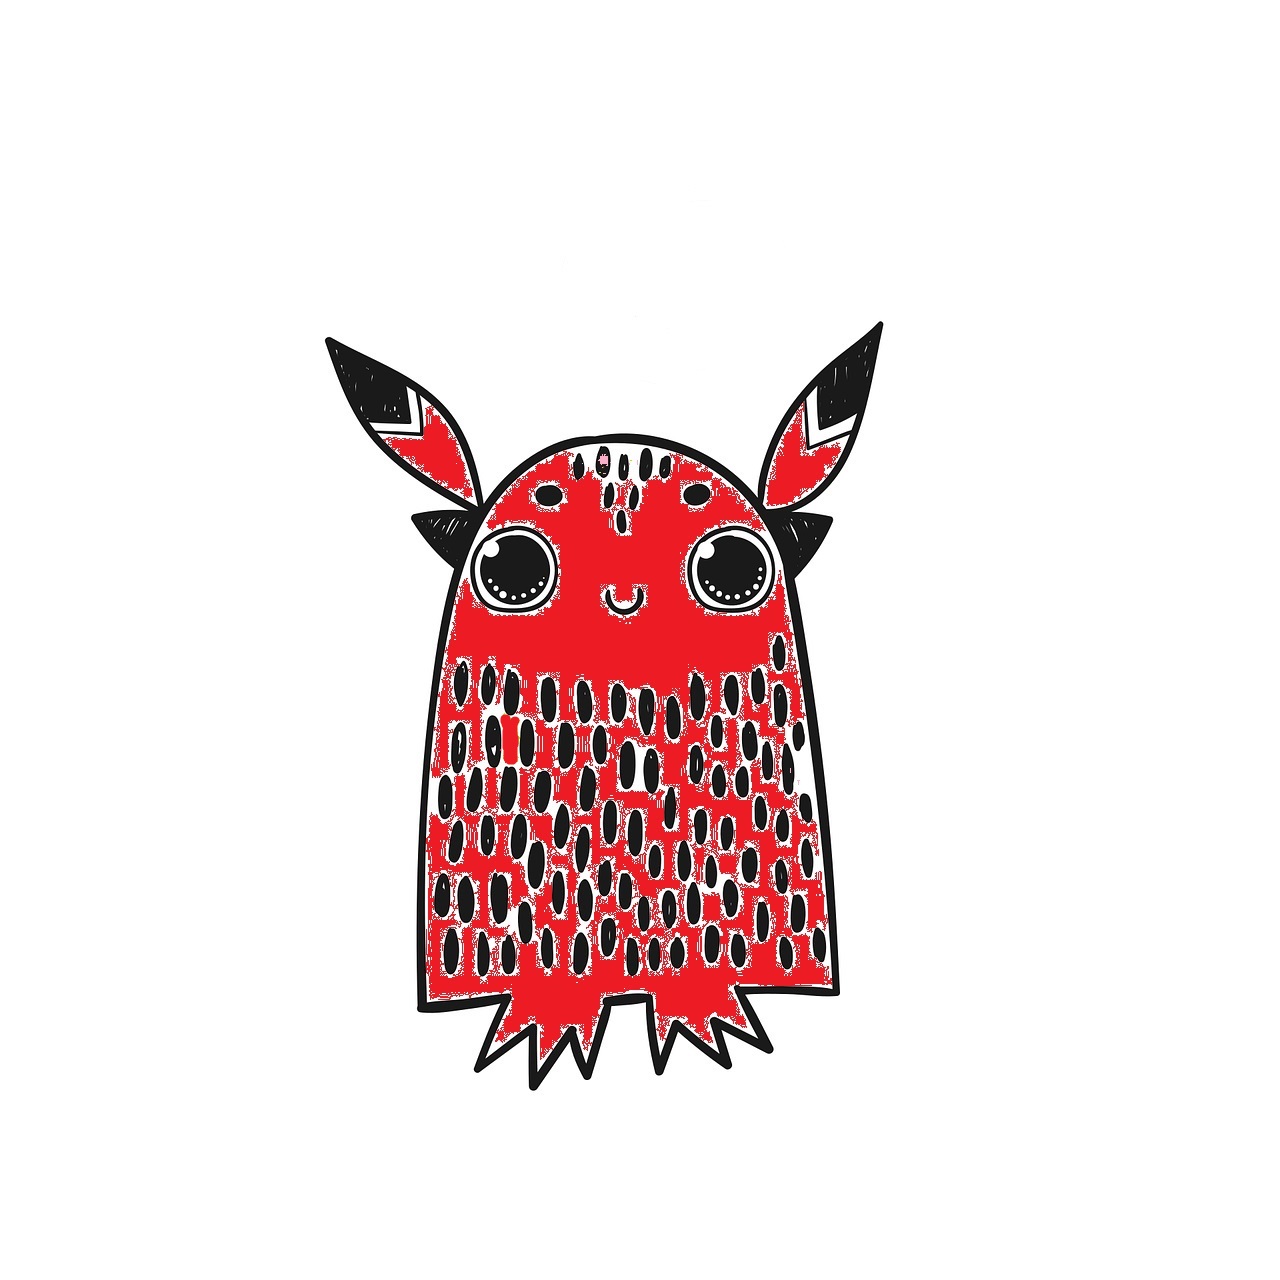 Monstruo rojo con forma acampanada, con orejas puntiagudas, sin brazos y pies pequeños. Los ojos son grandes y está sonriendo